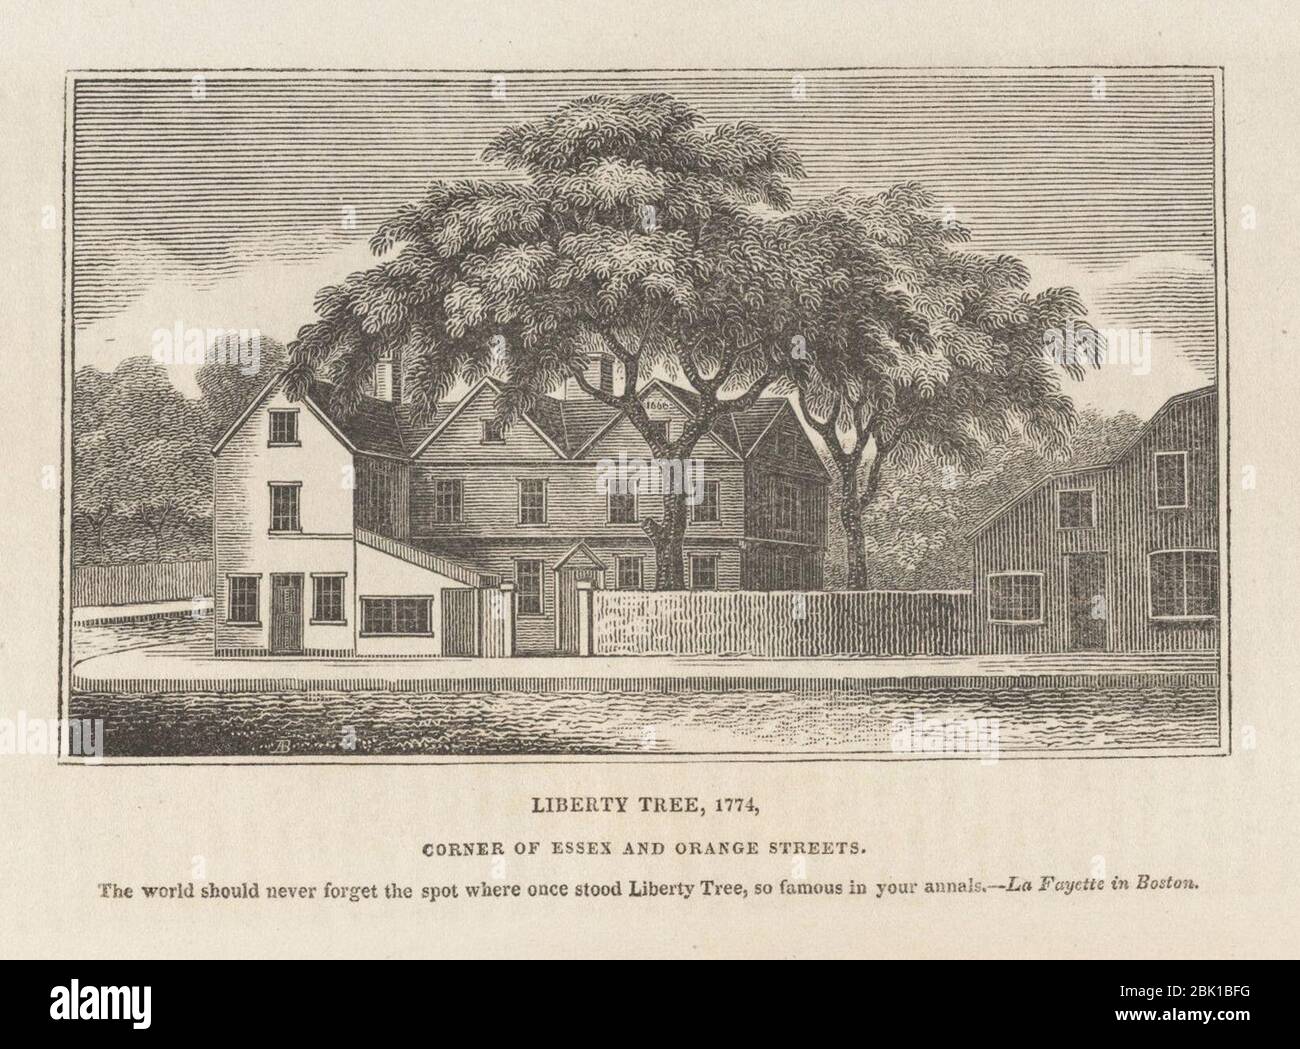 Houghton AC8 Sn612 825h - Liberty Tree. Stockfoto